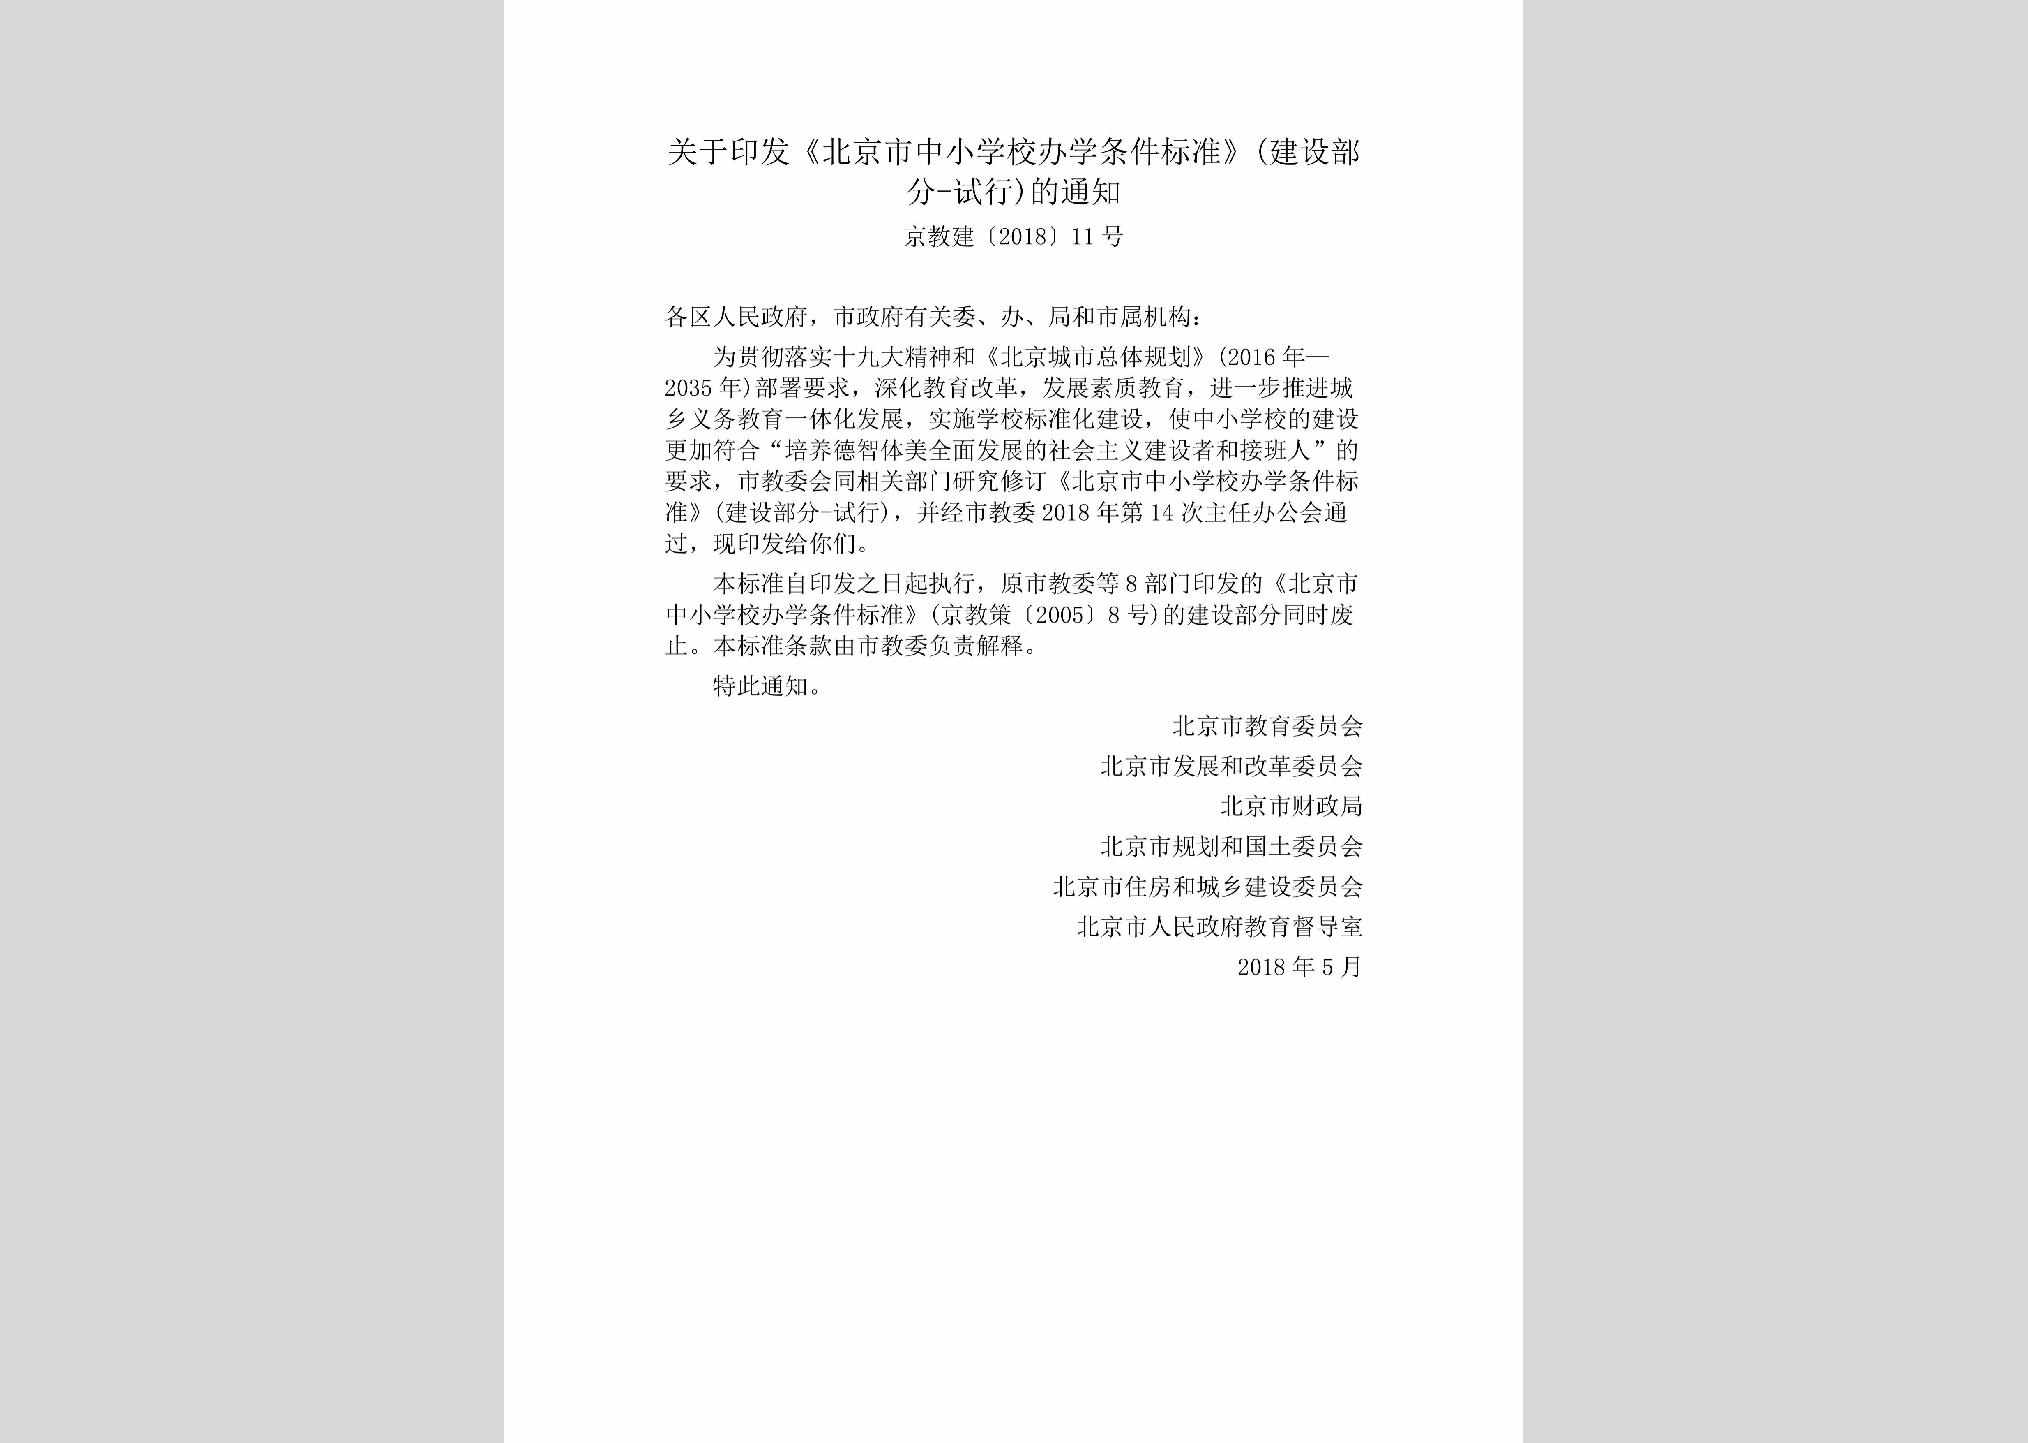 京教建[2018]11号：关于印发《北京市中小学校办学条件标准》(建设部分-试行)的通知